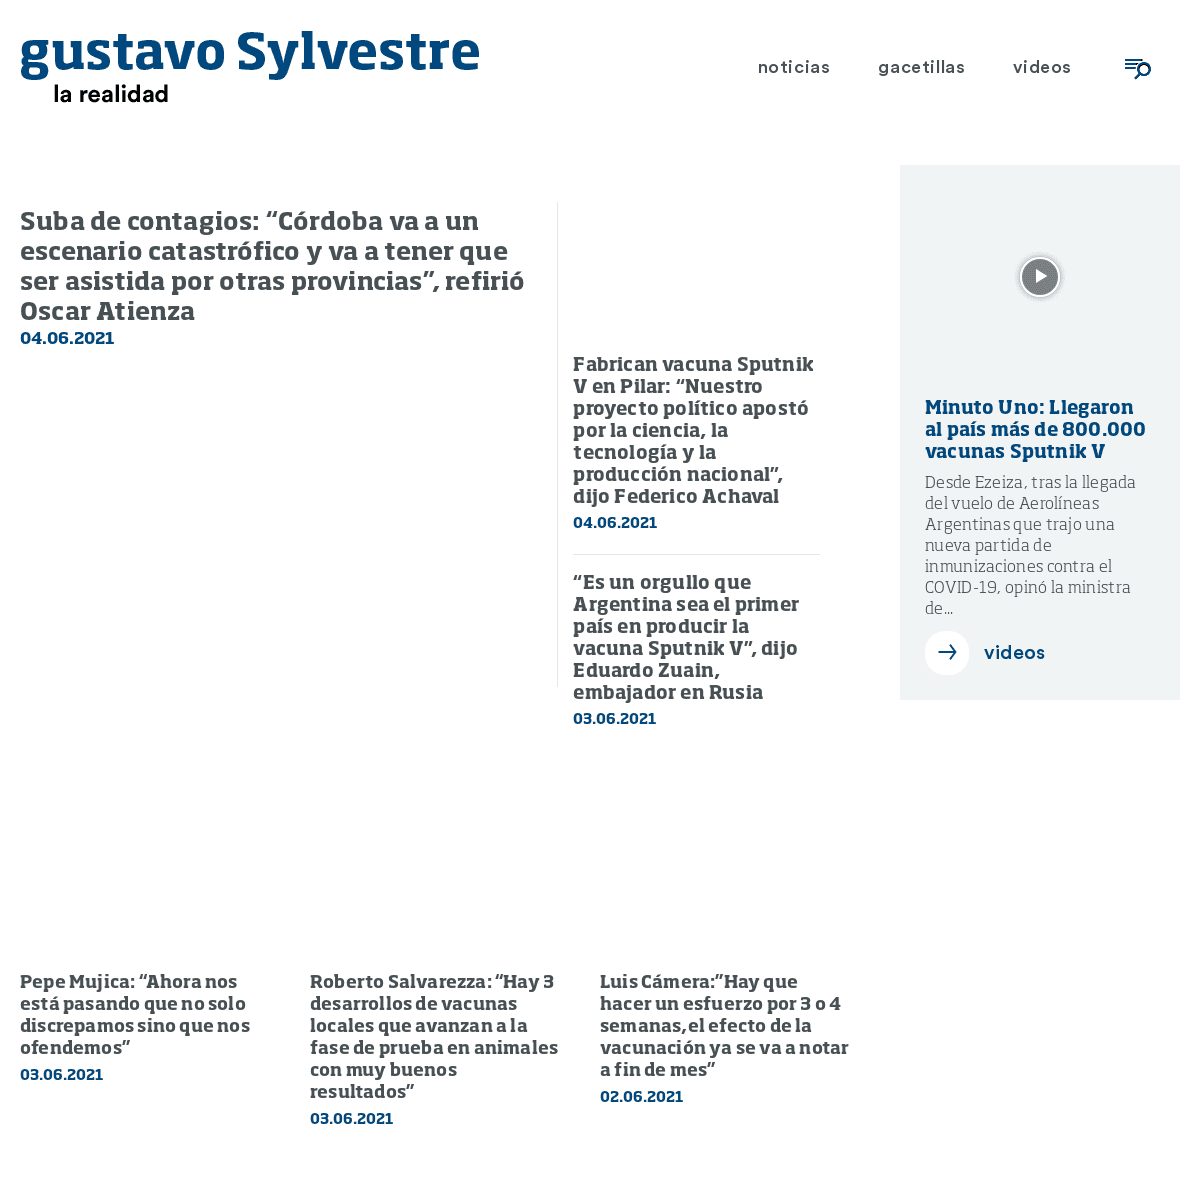 A complete backup of https://gustavosylvestre.com